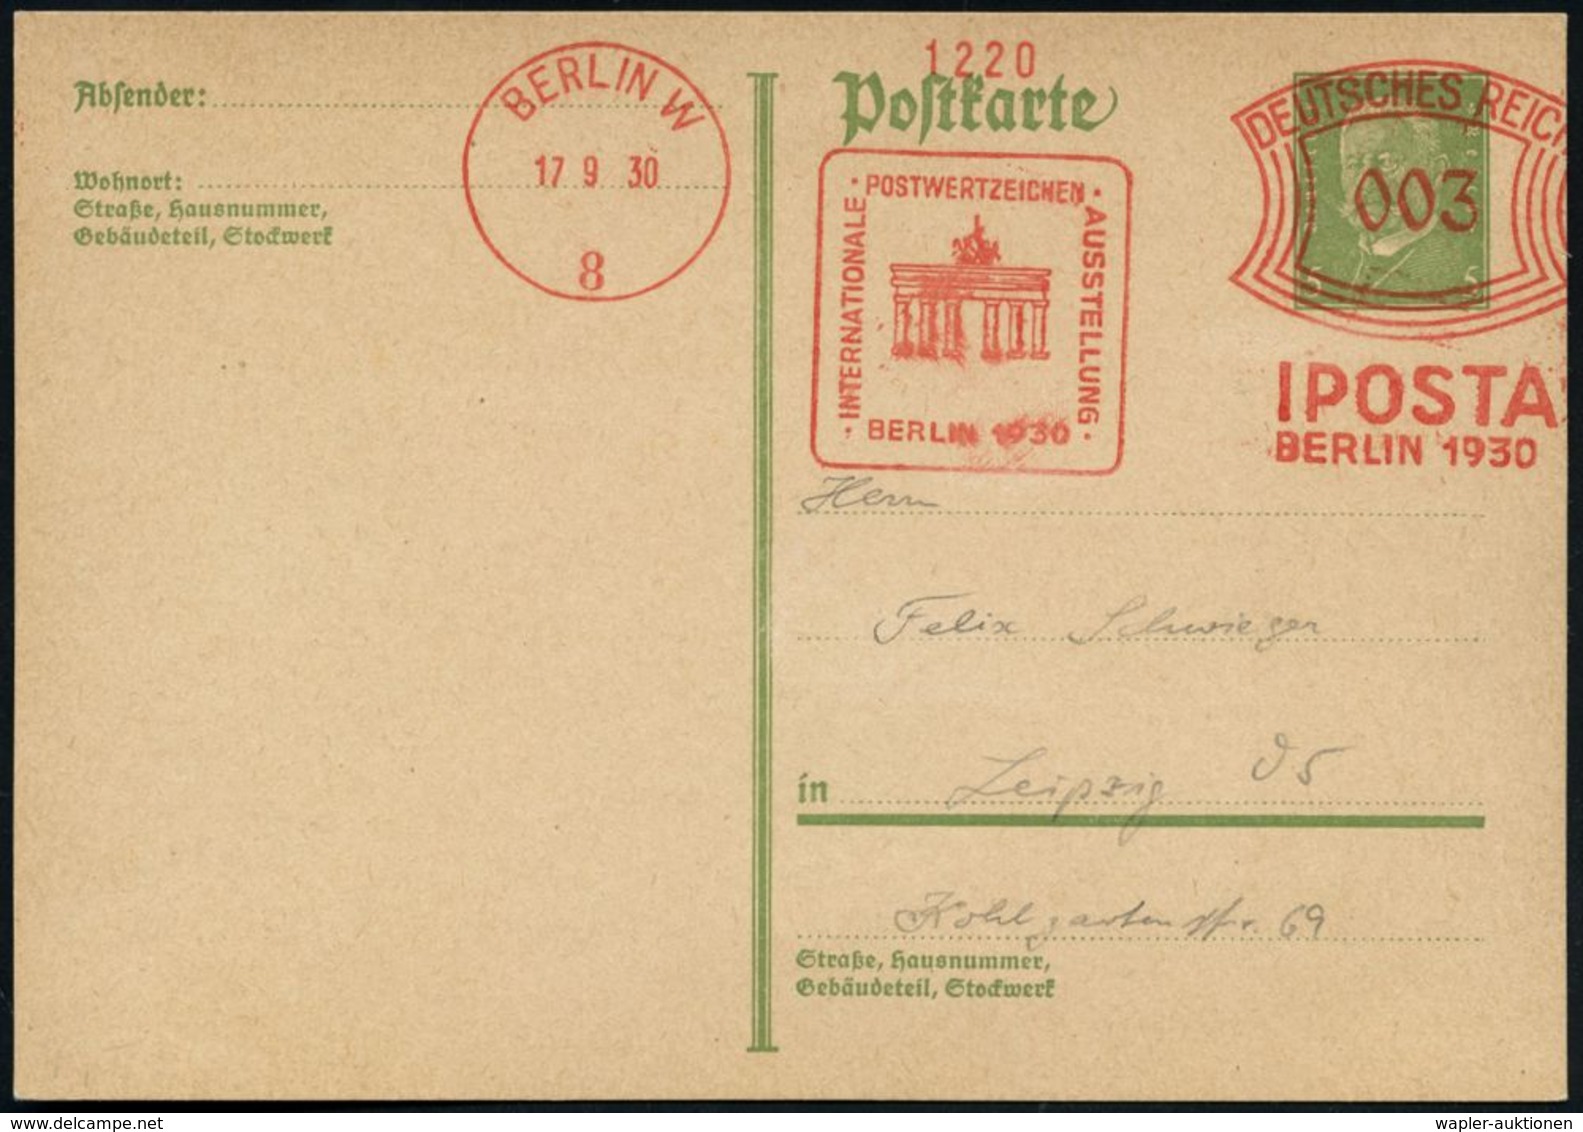 BRANDENBURGER TOR - EIN DEUTSCHES SYMBOL : BERLIN W/ 8/ IPOSTA/ BERLIN.. 1930 (17.9.) AFS 003 Pf. = Brandenbg.Tor Auf In - Denkmäler